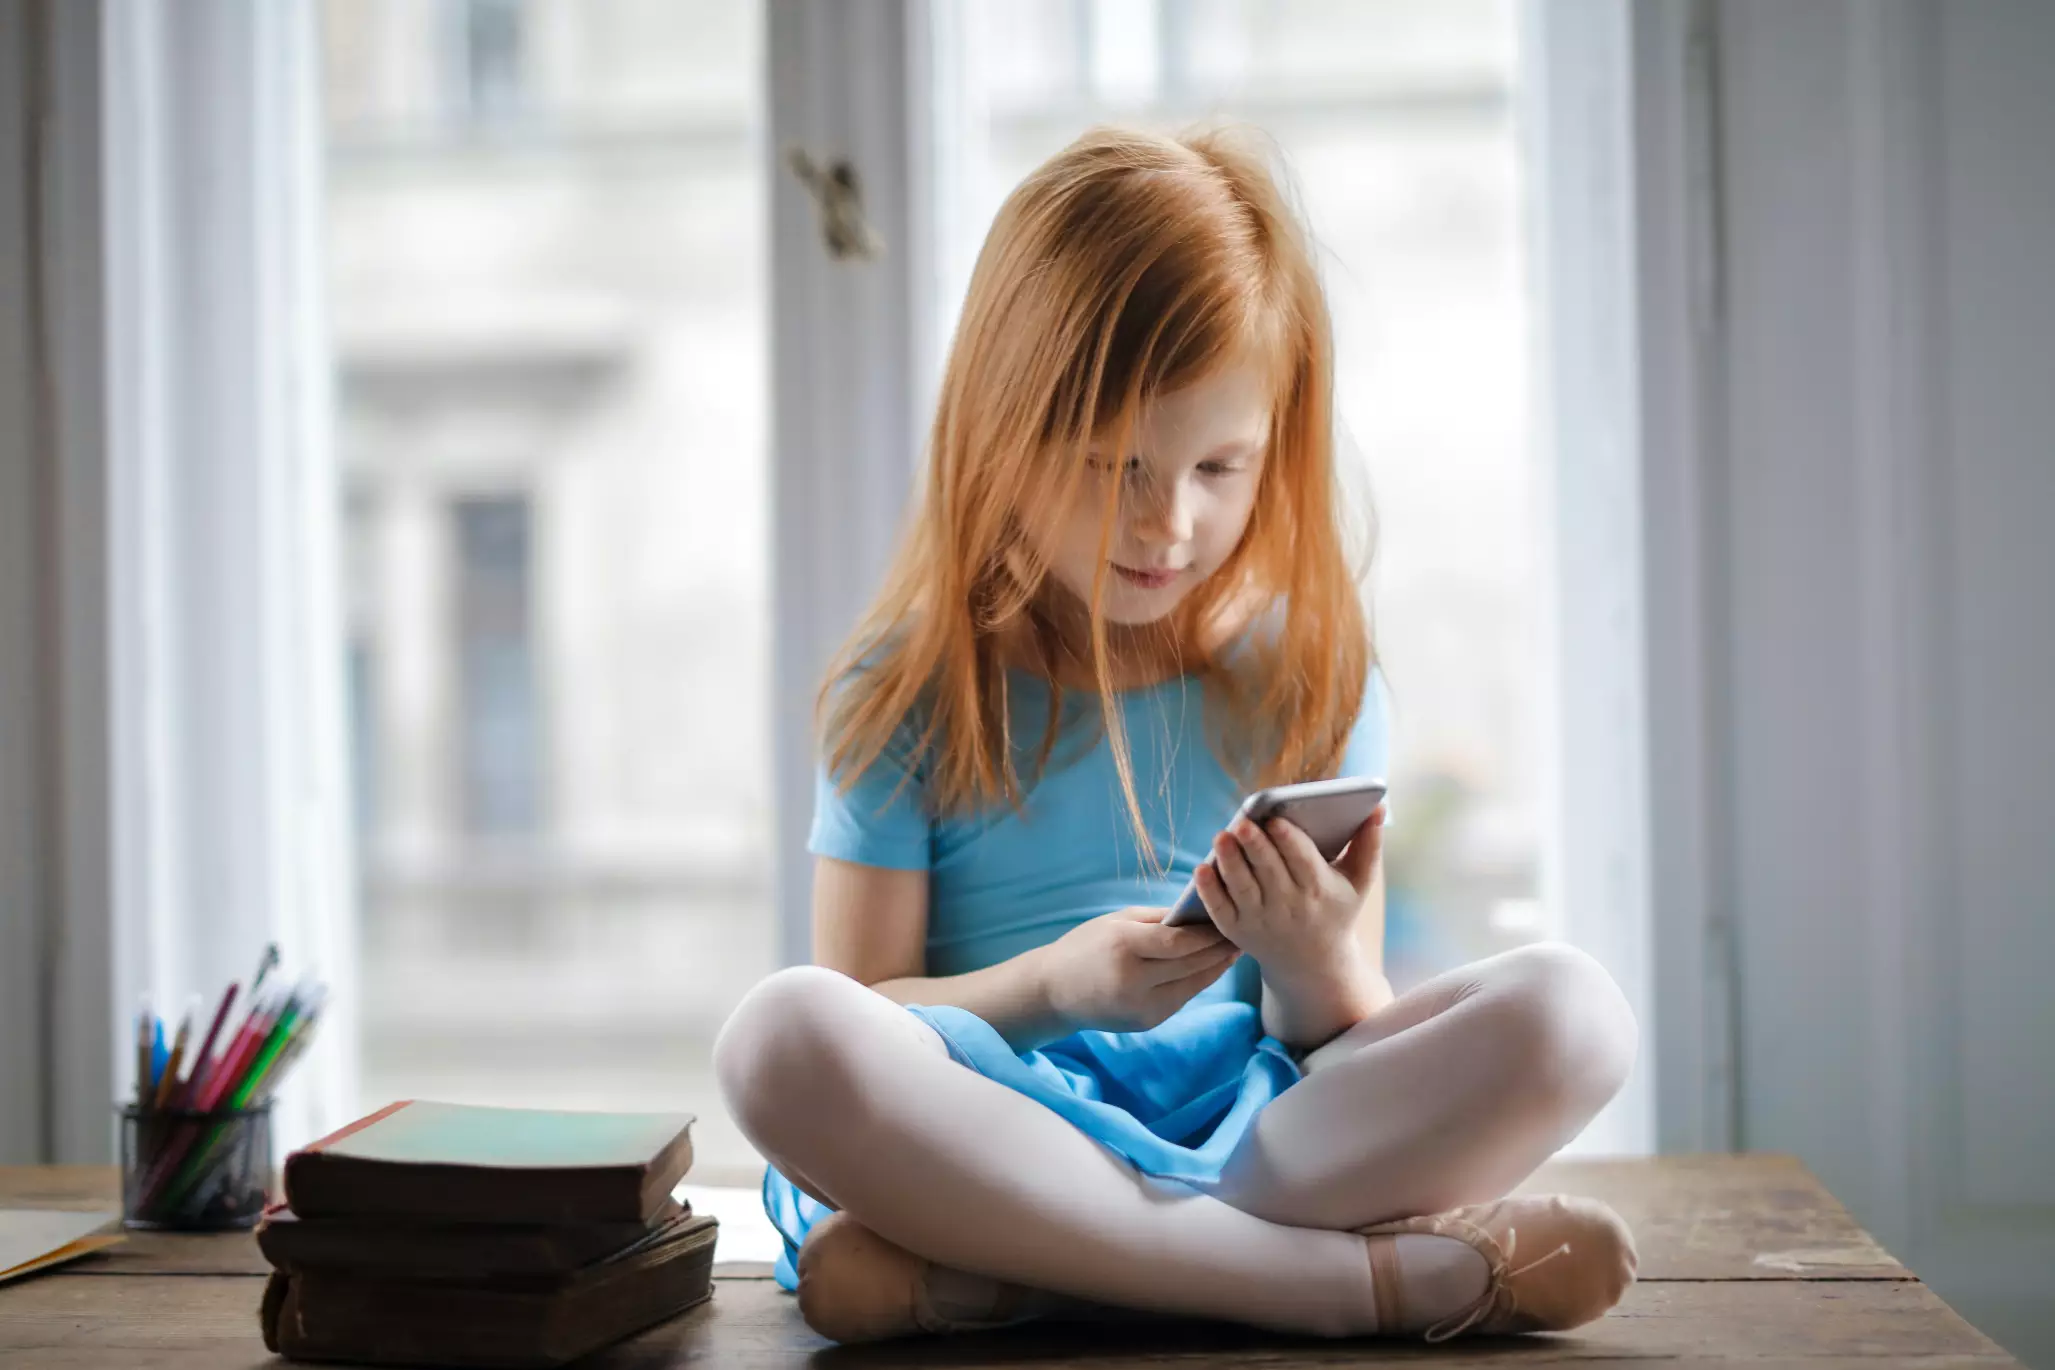 Проведений за цифровими пристроями час має довгостроковий вплив на дитячий мозок, — дослідження